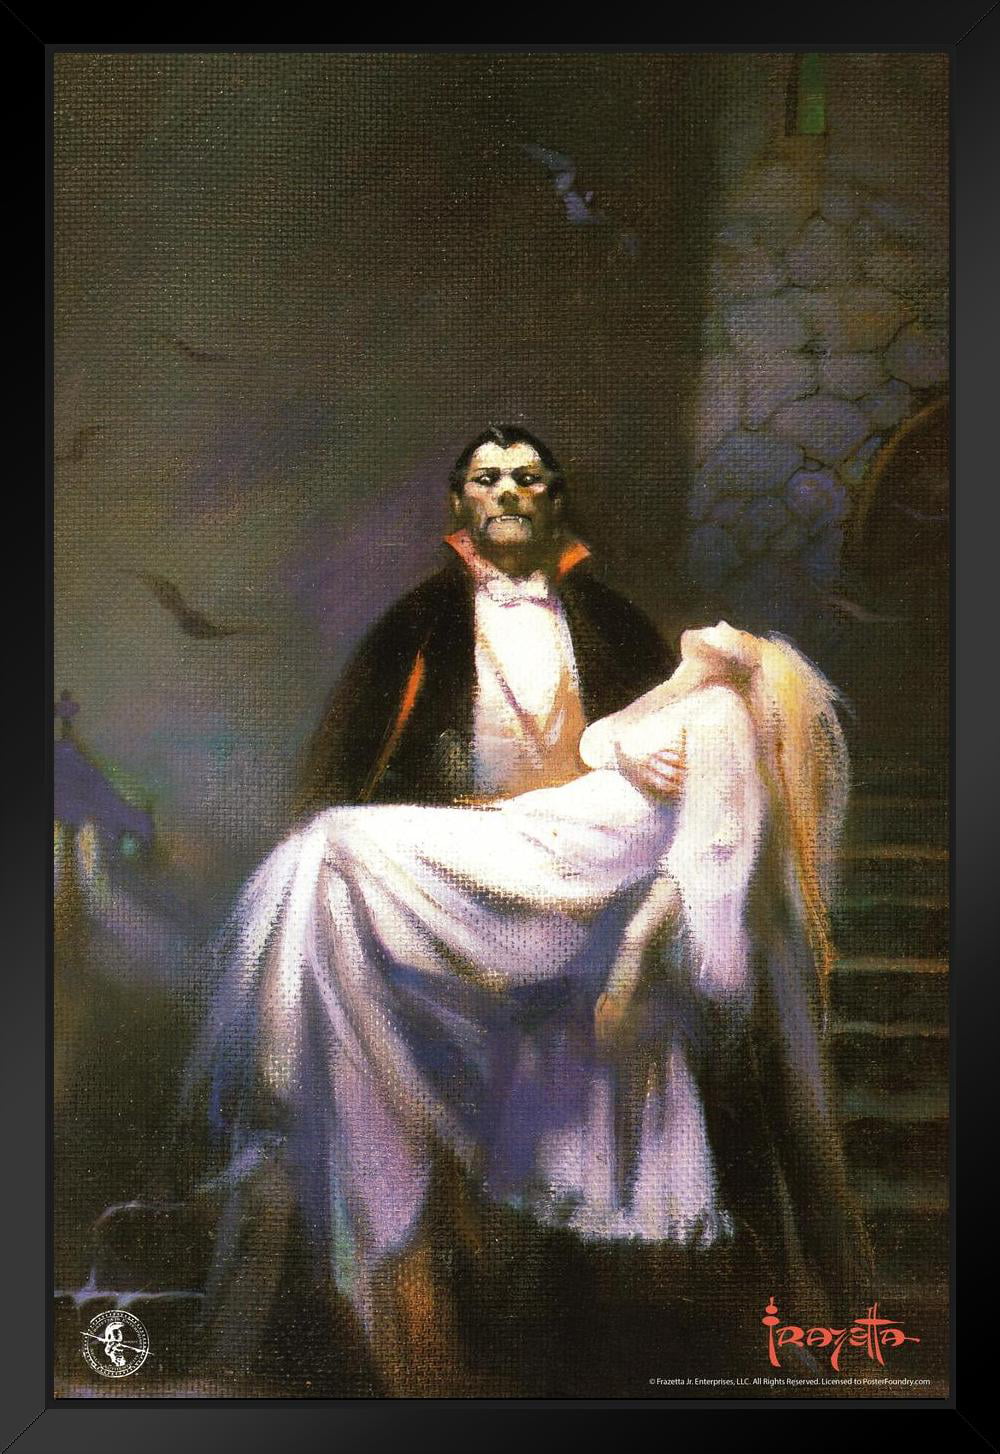 Frank Frazetta Dracula S Bride Horror Fantasy Artwork Vampire Monster